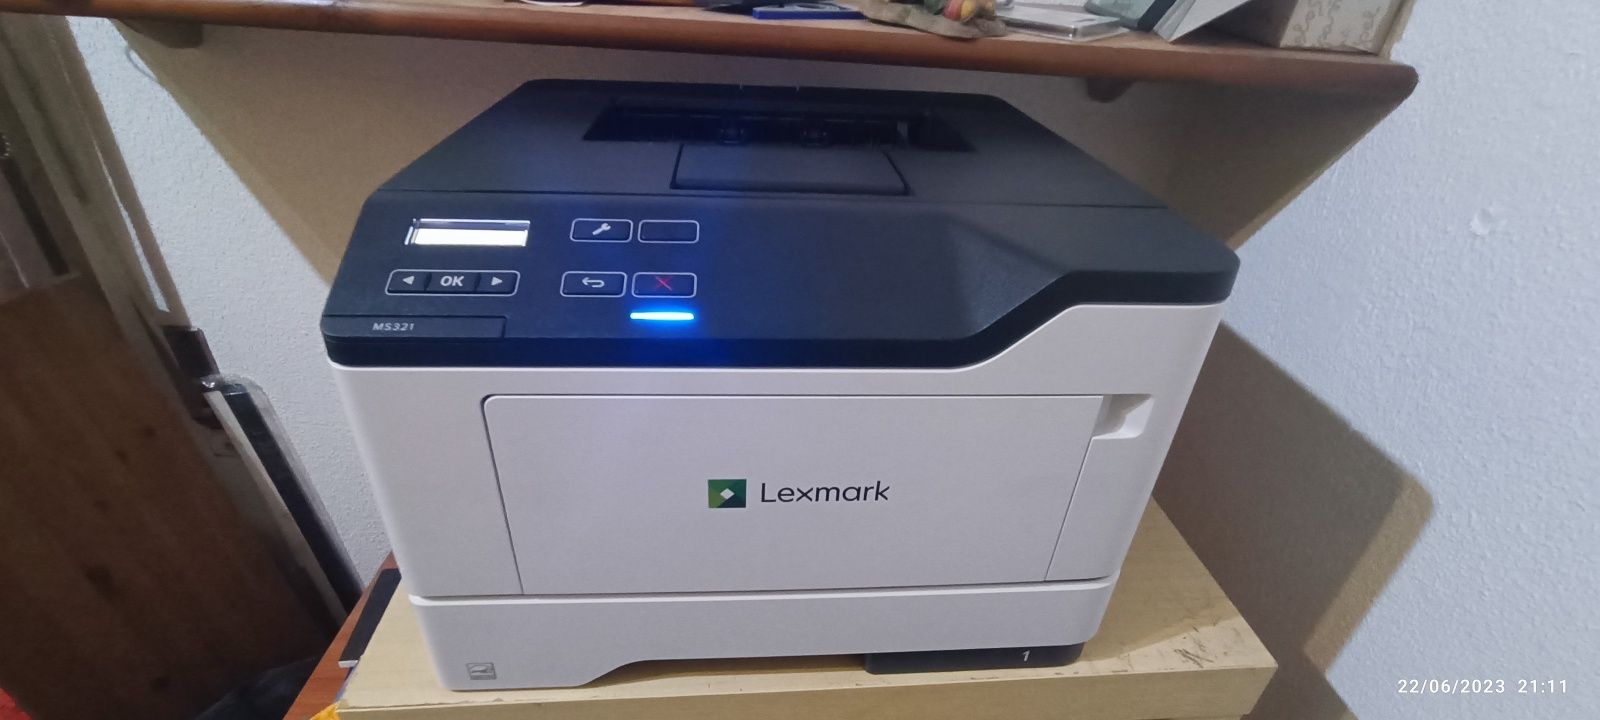 Impressora lexmark ms321 com mais um toner